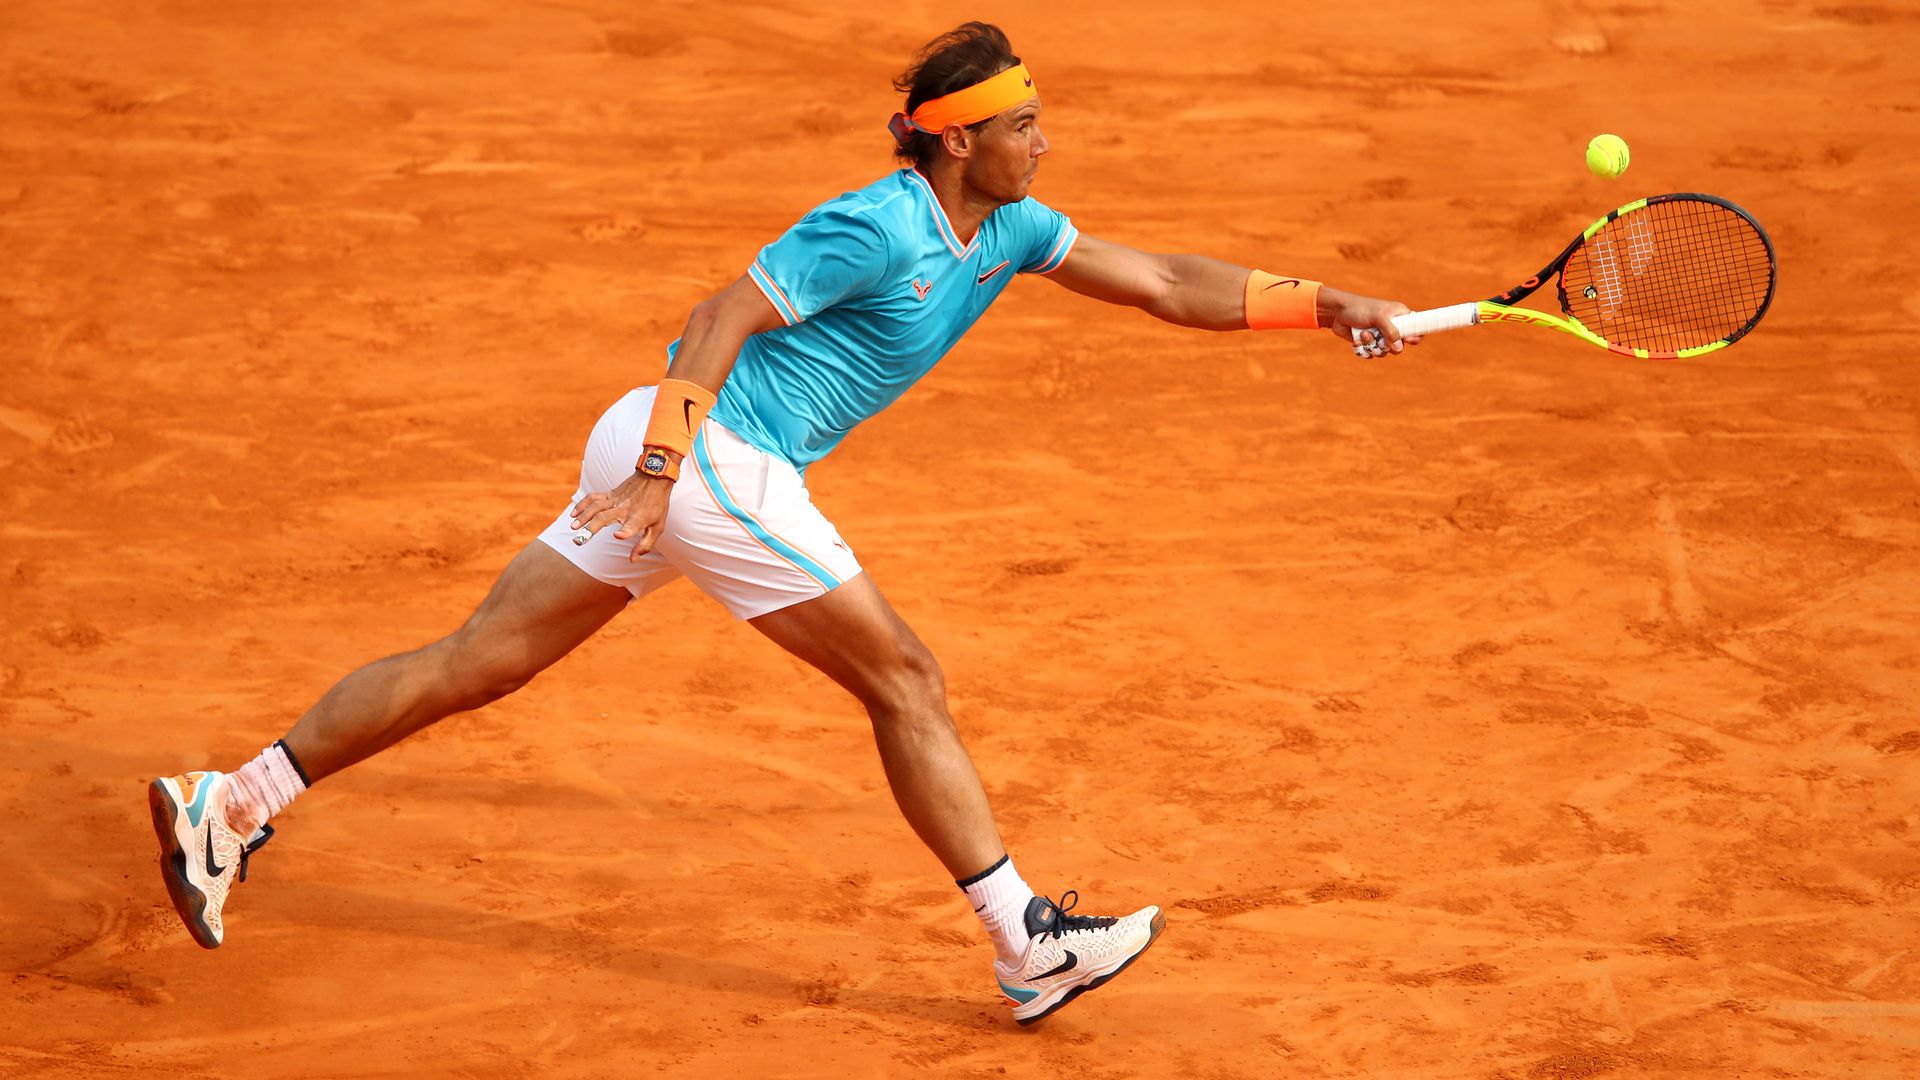 Rafael Nadal reaches to hit a ball